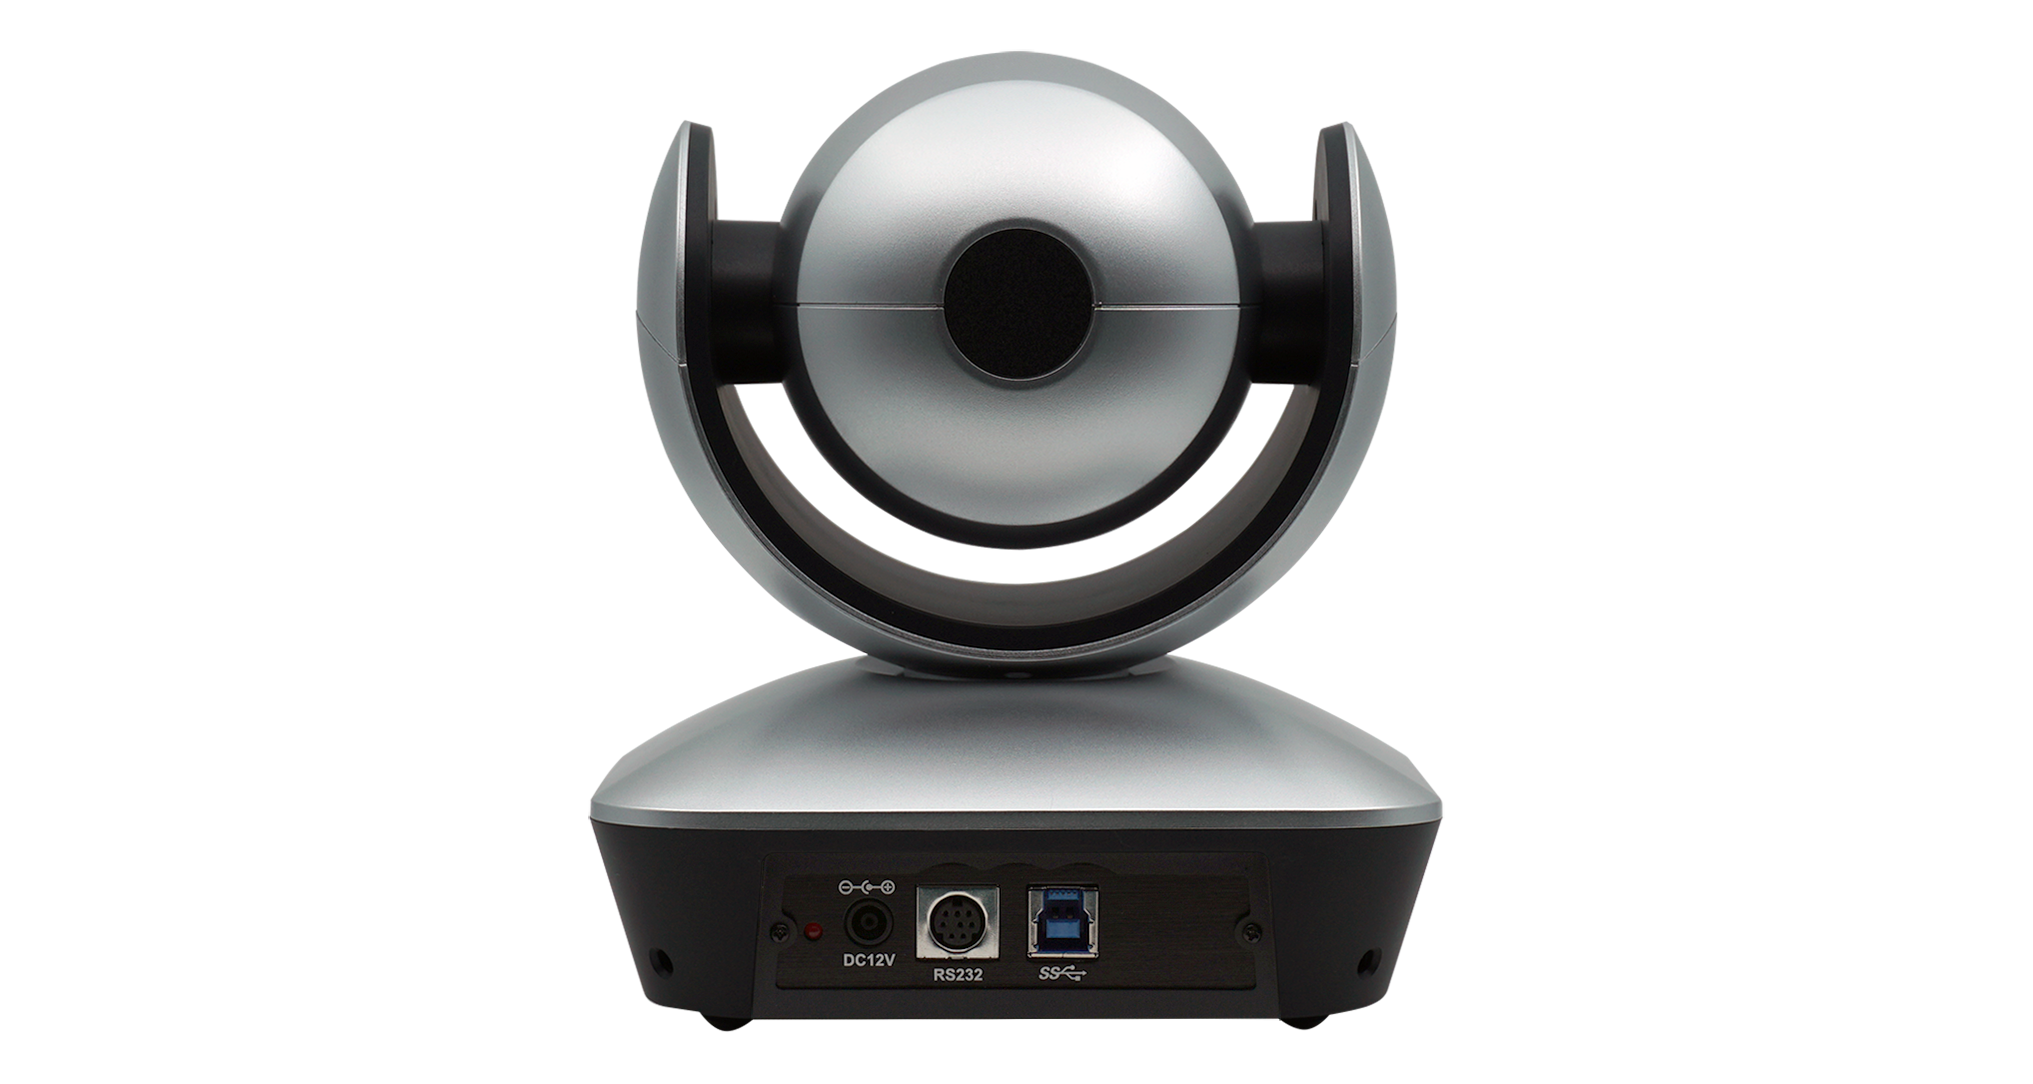 Камера для видеоконференцсвязи Prestel HD-PTZ1U3